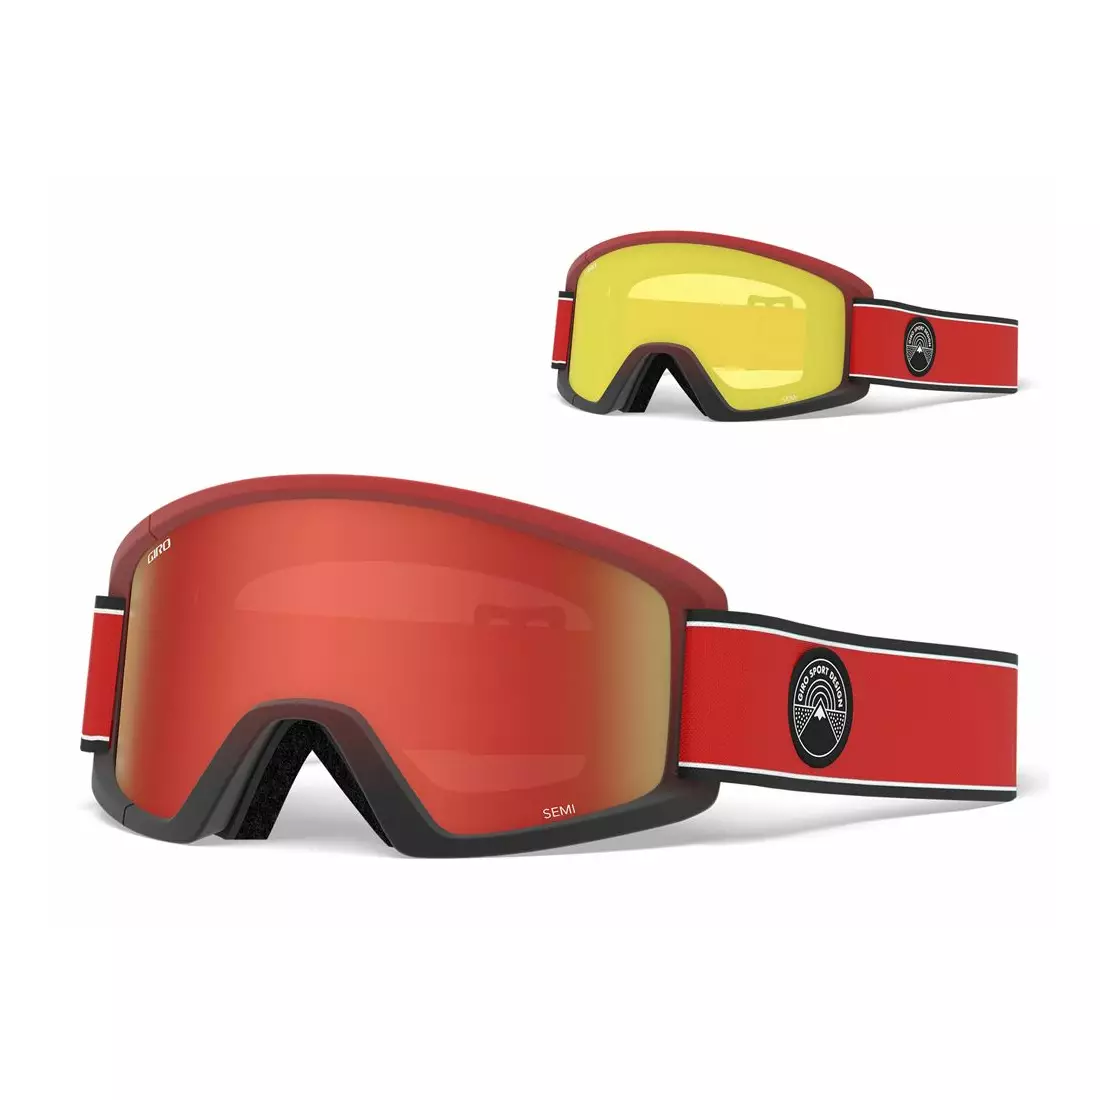 Ski/snowboard winter goggles GIRO SEMI RED ELEMENT GR-7105390